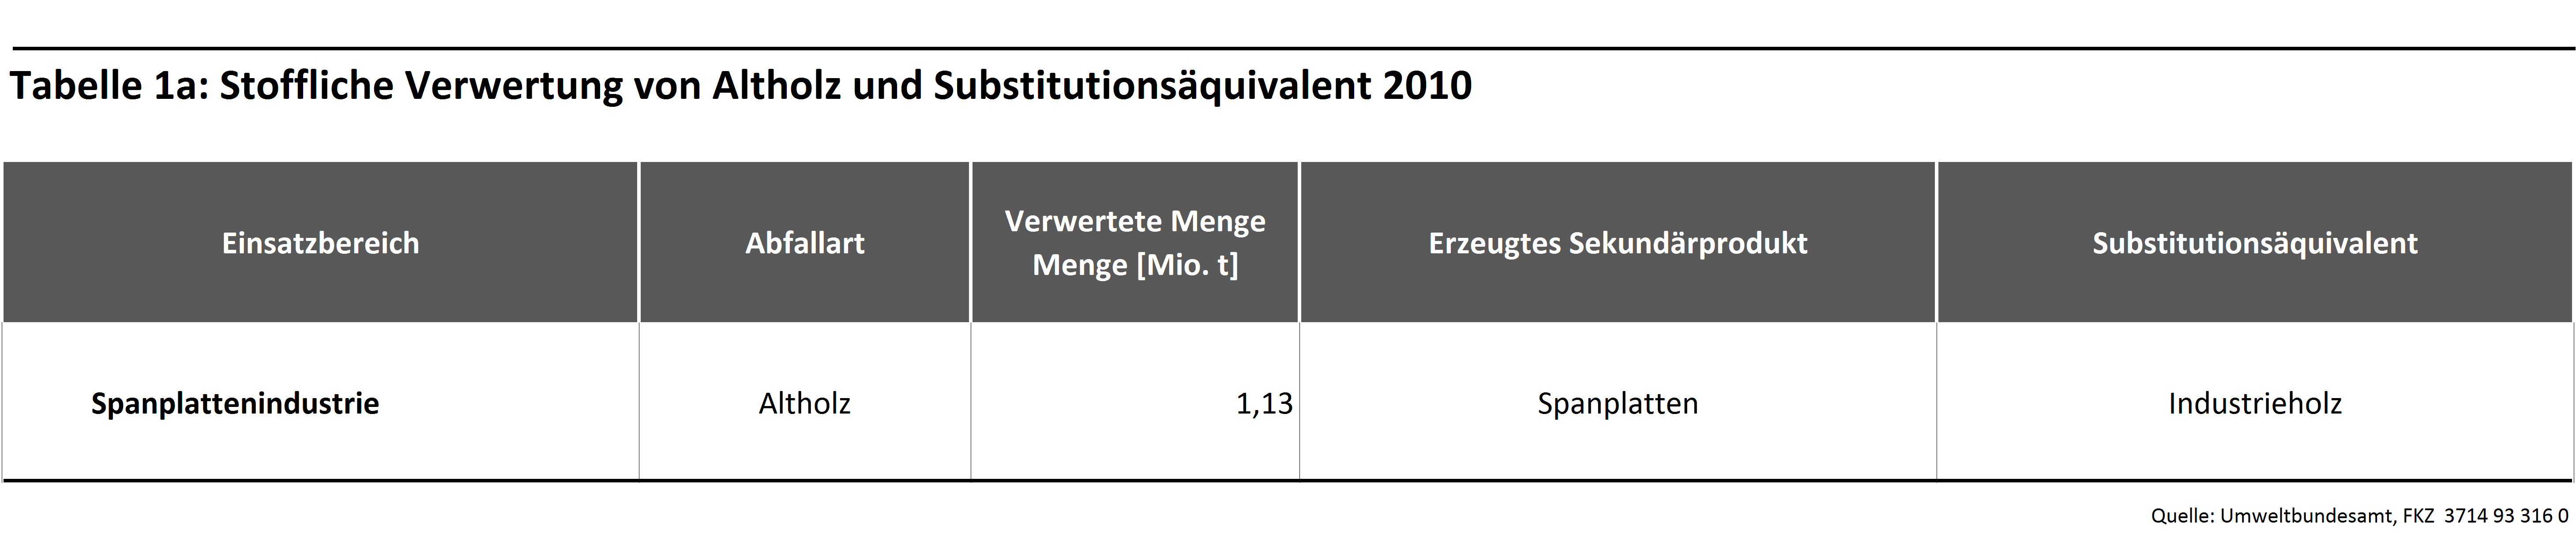 Tabelle 1a: Stoffliche Verwertung von Altholz und Substitutionsäquivalent 2010